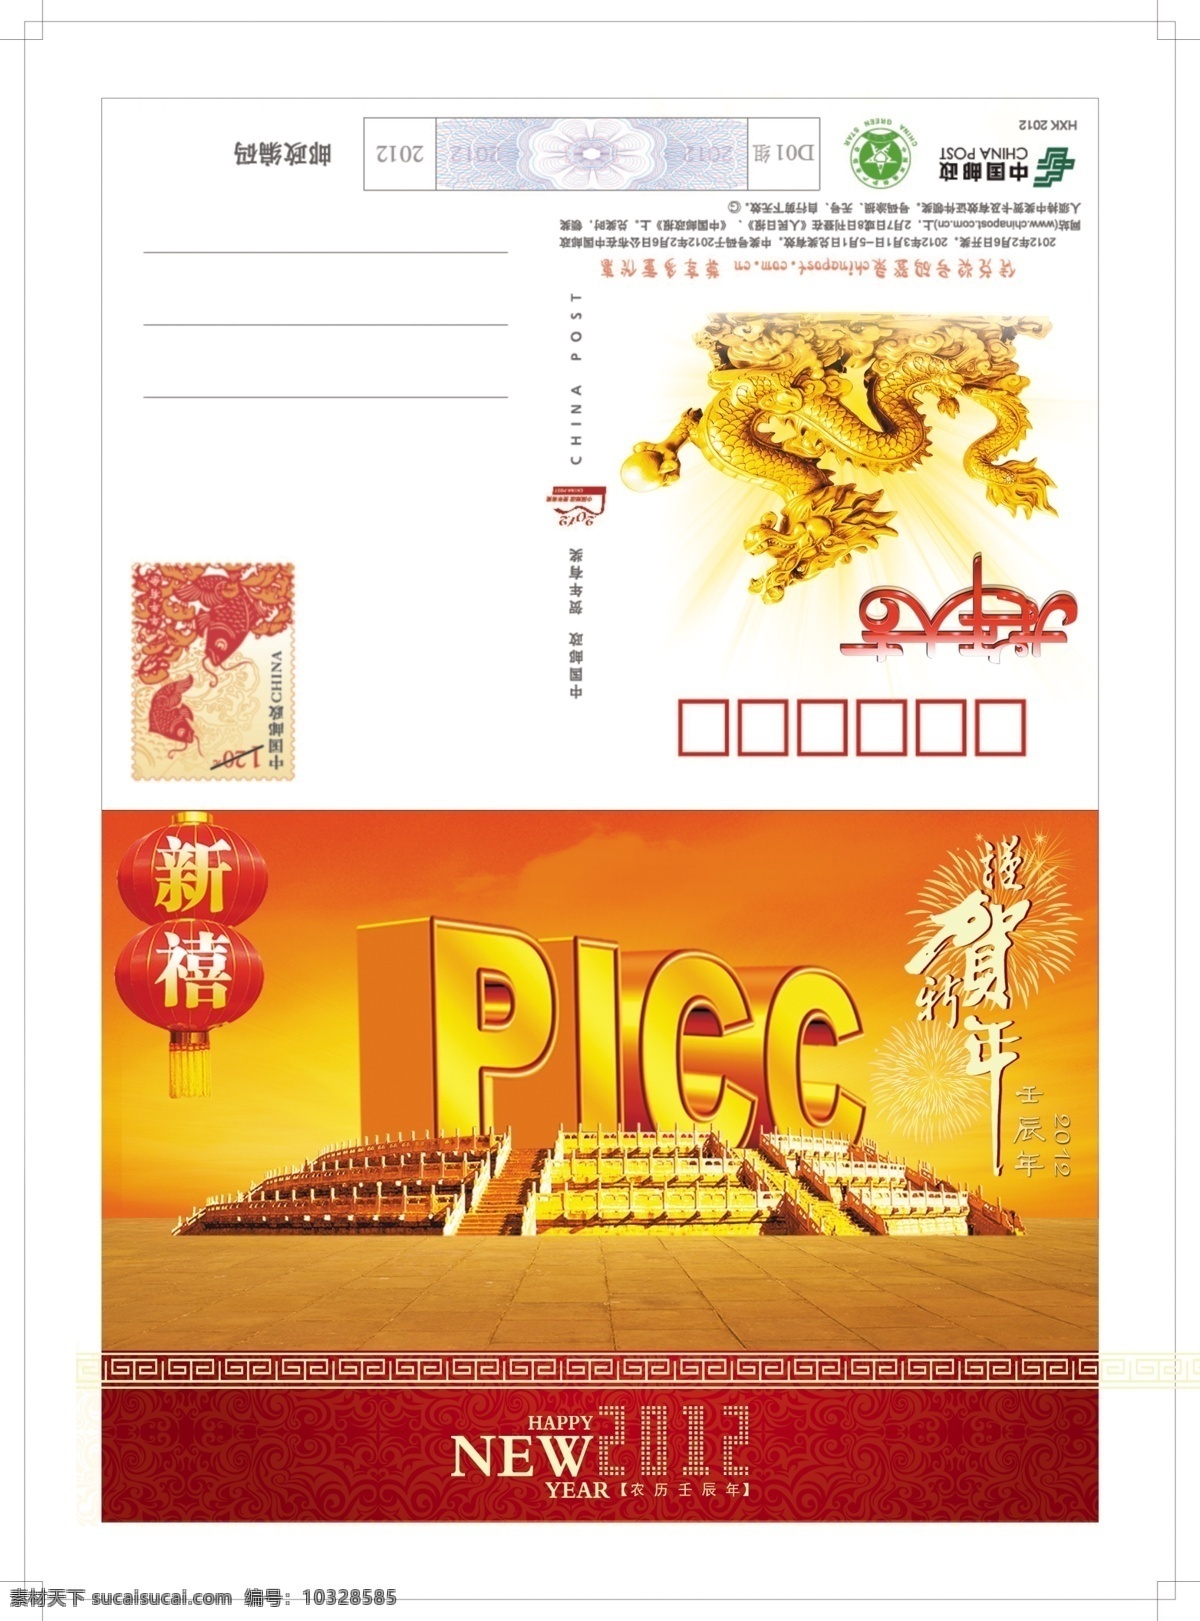 新年贺卡 龙年 2012 picc 贺新年 贺岁 人保 名片卡片 广告设计模板 源文件